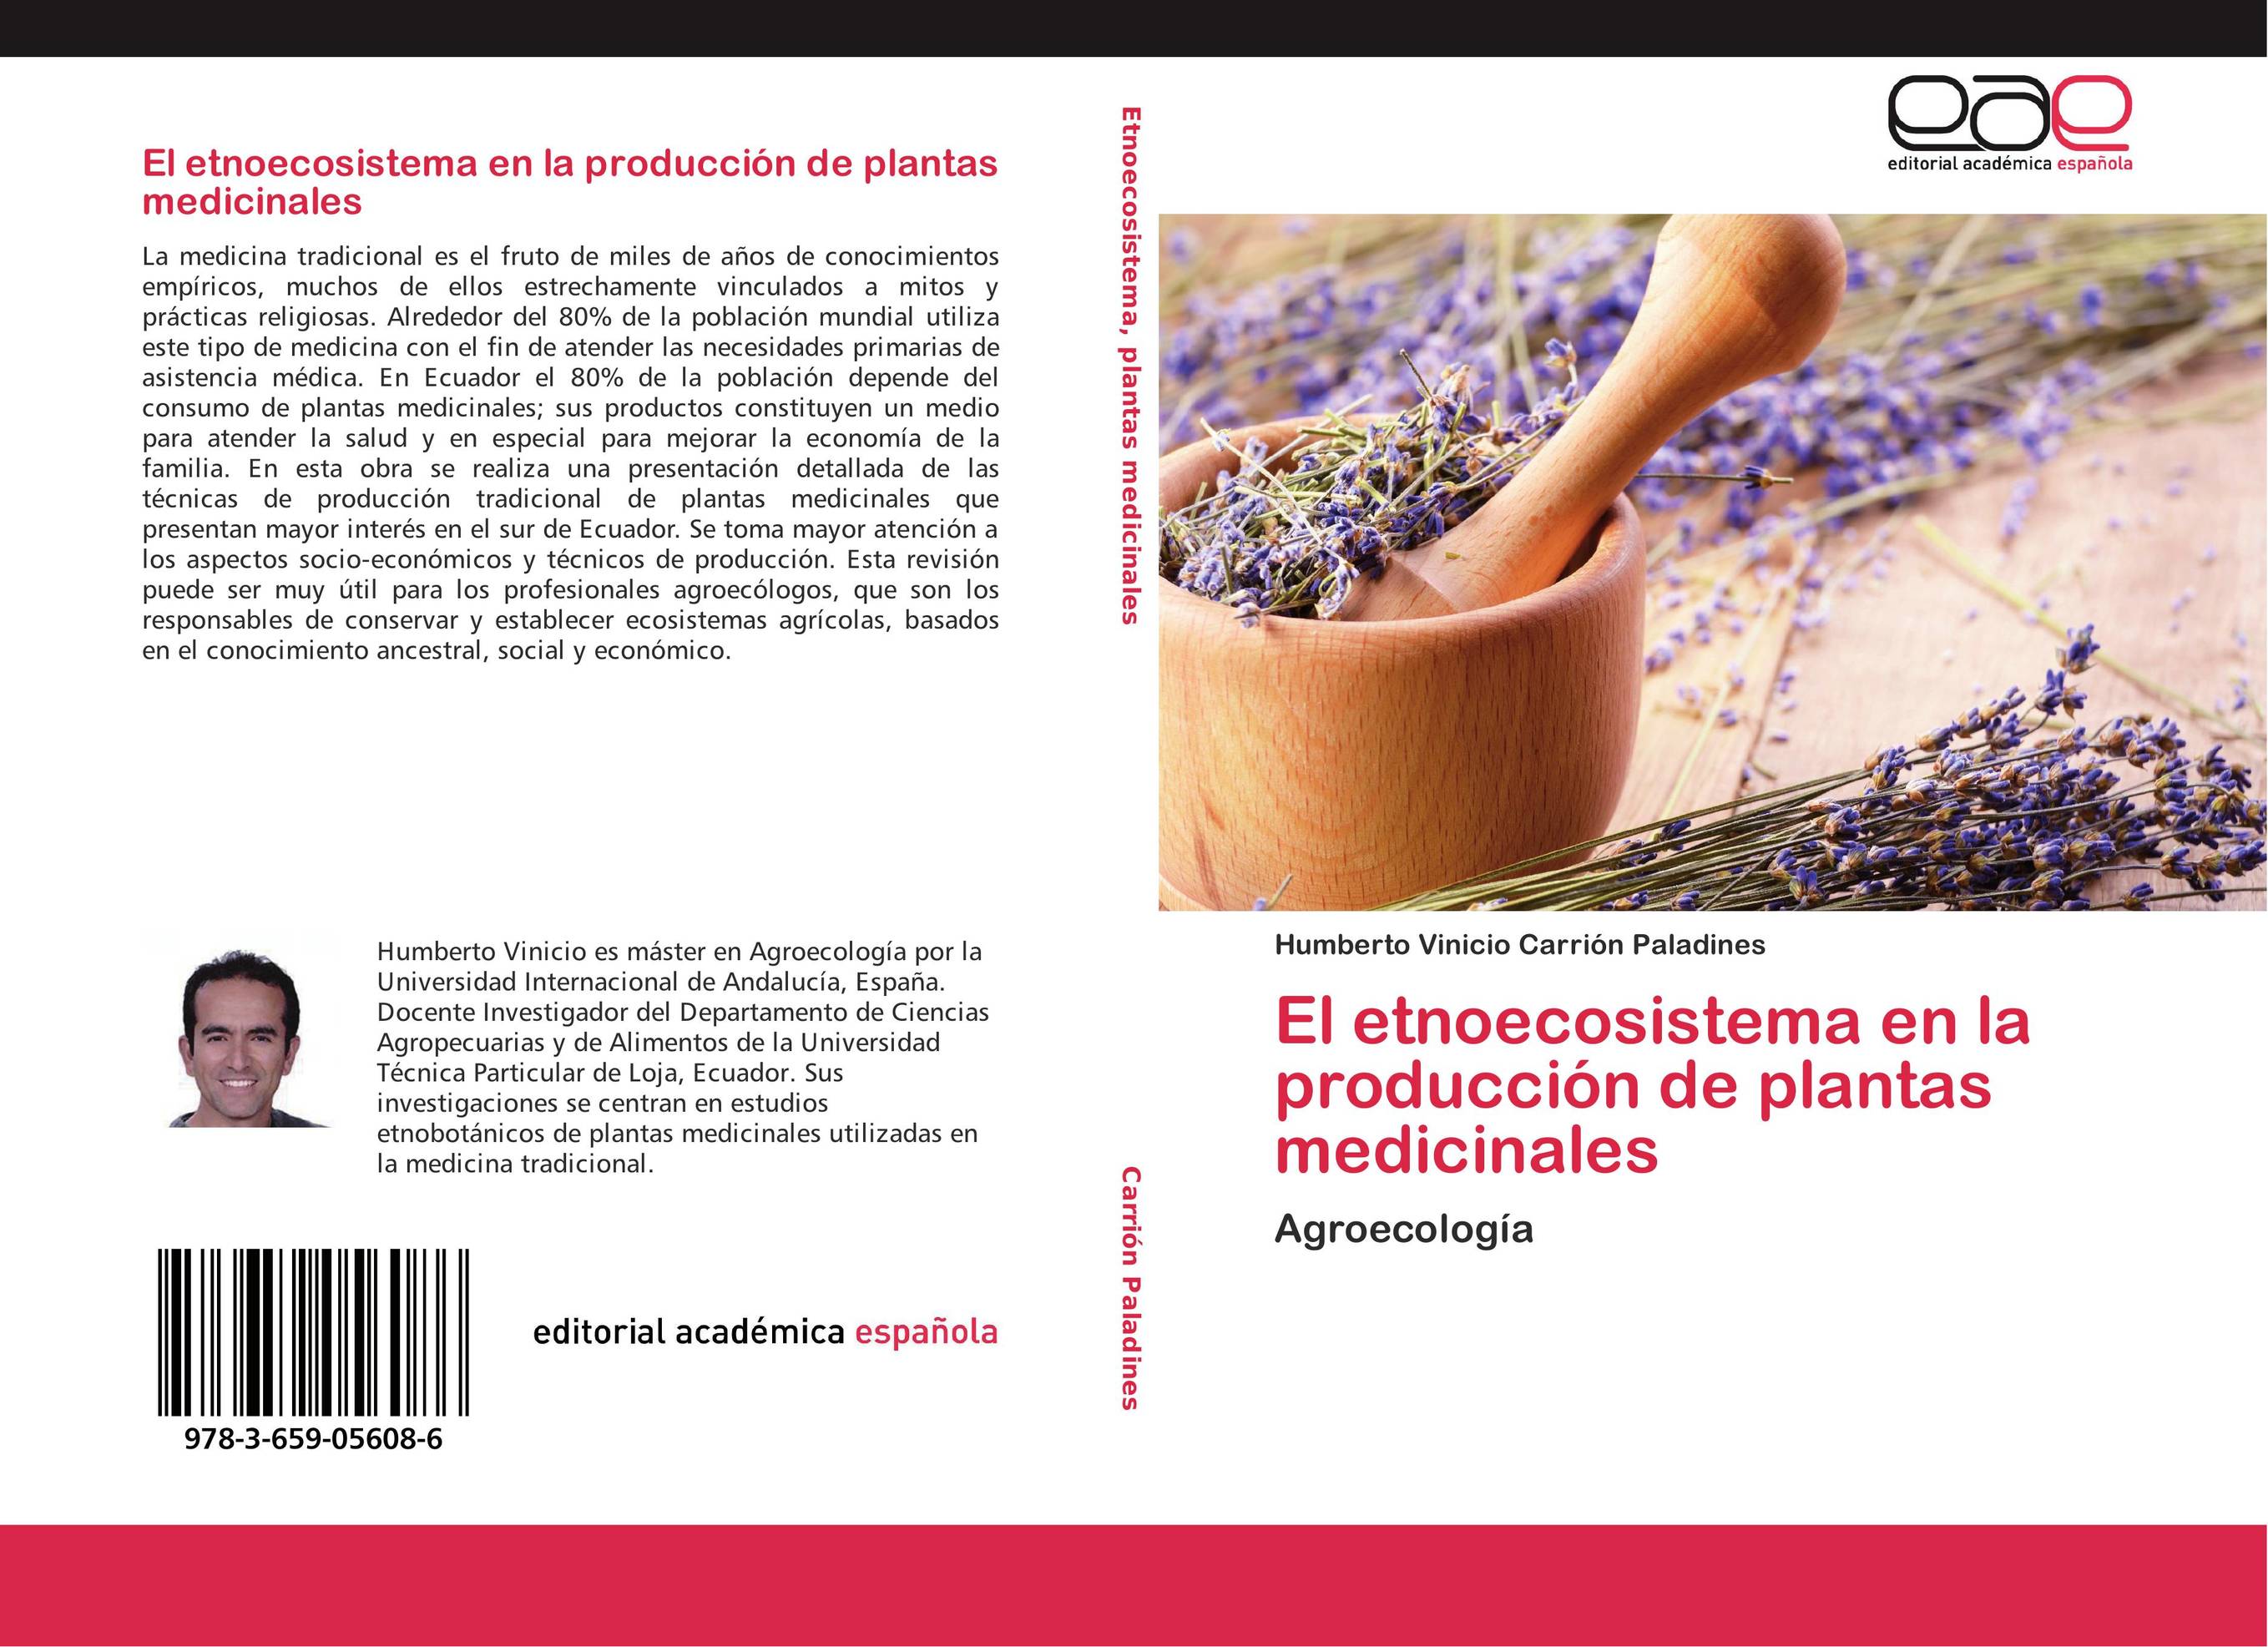 El etnoecosistema en la producción de plantas medicinales